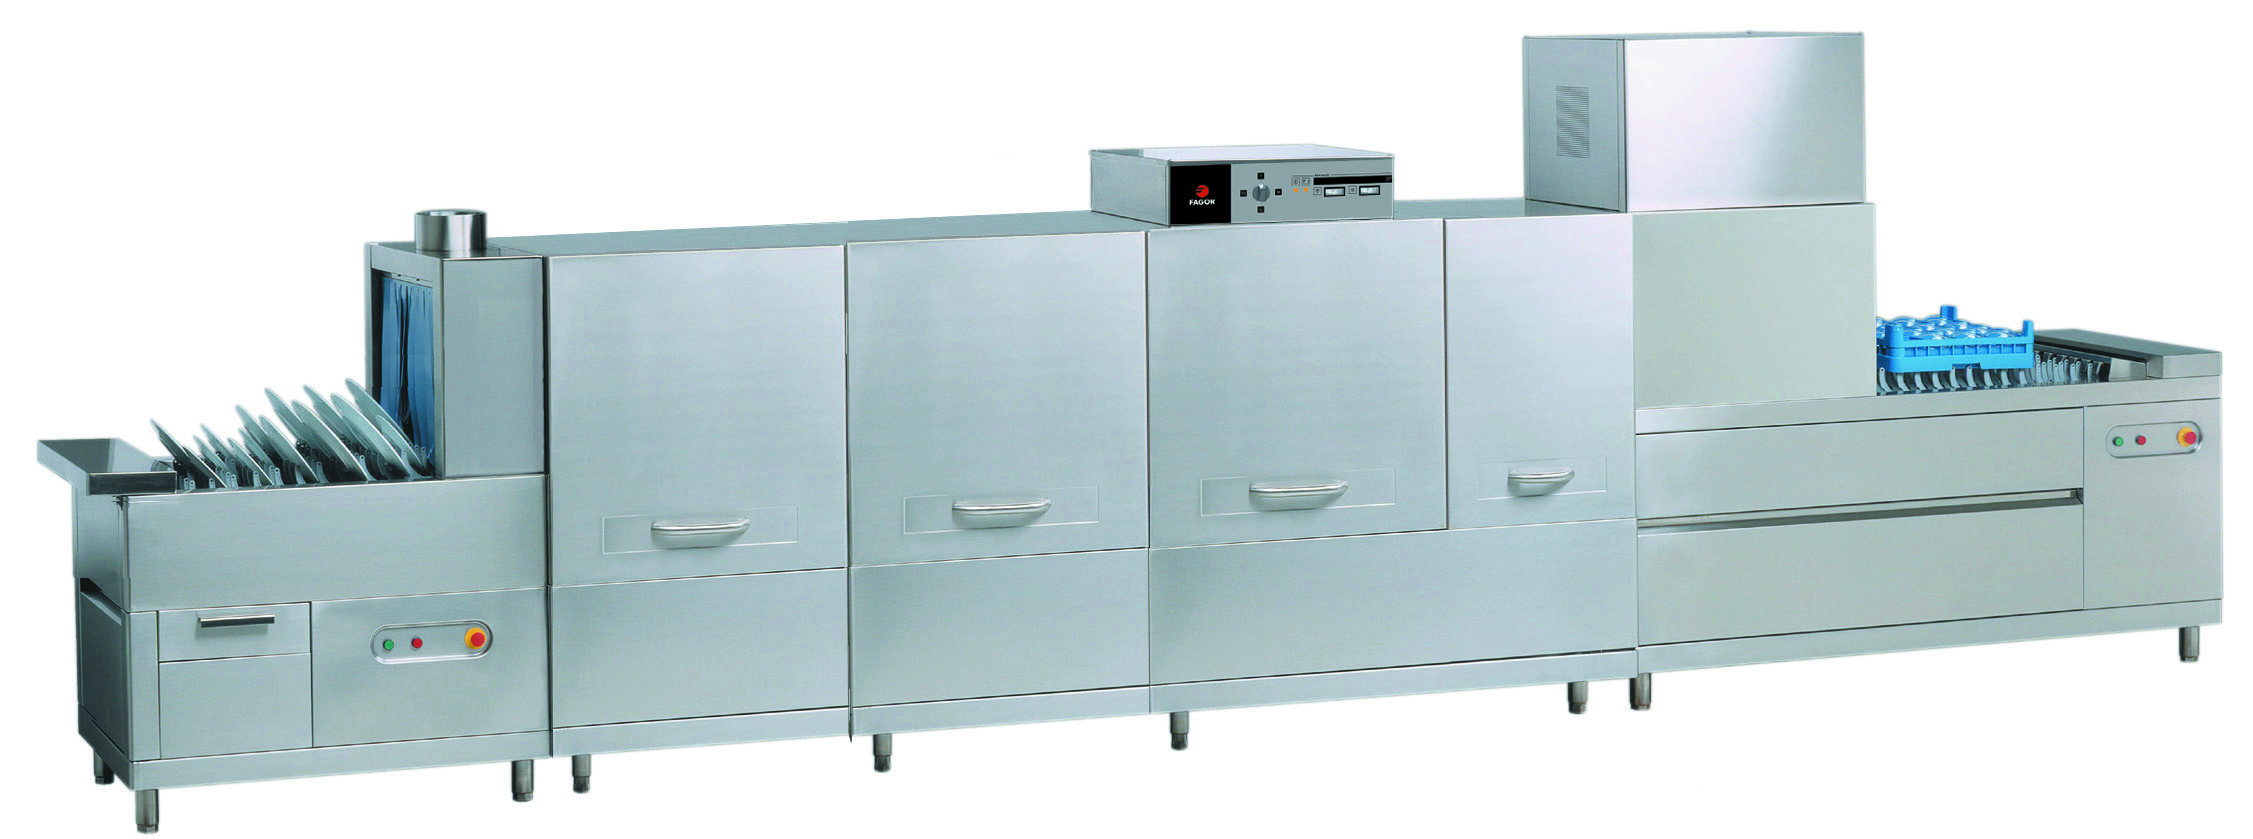 Конвейерная посудомоечная машина Fagor f1-4000